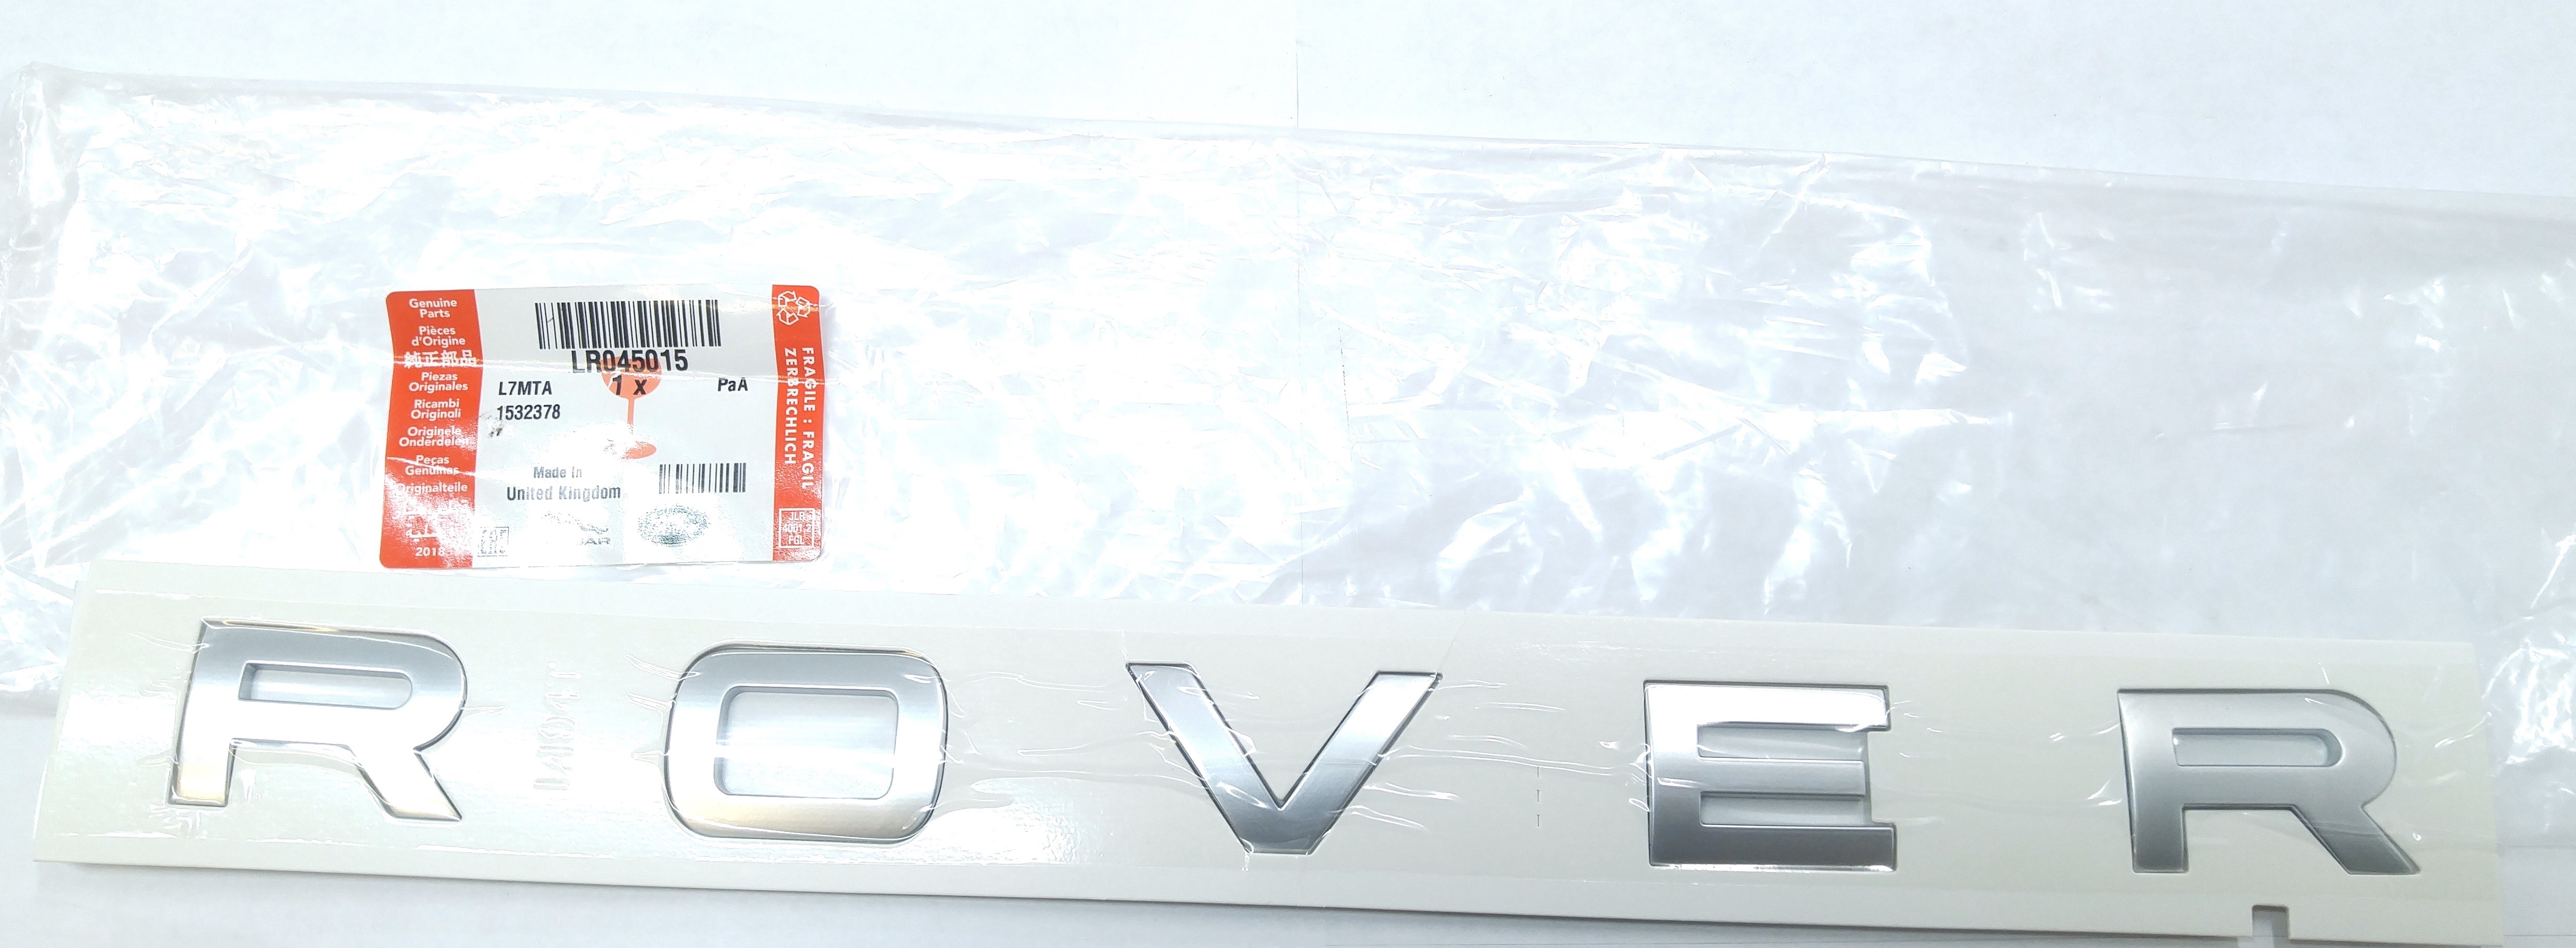 Буквы крышки багажника «ROVER» RRS 2014 — (LR045015||LAND ROVER)